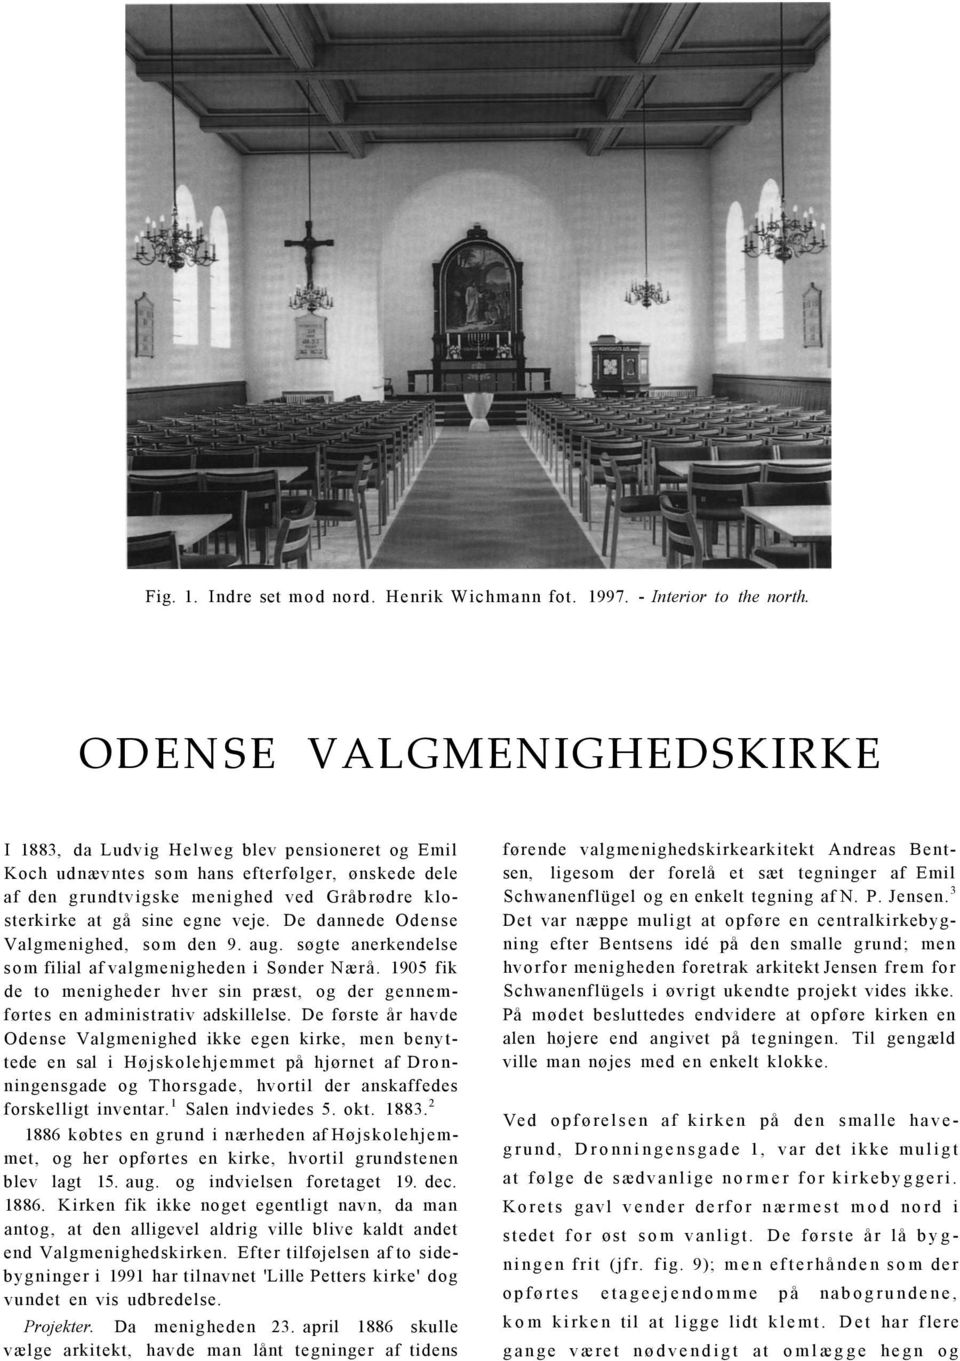 veje. De dannede Odense Valgmenighed, som den 9. aug. søgte anerkendelse som filial af valgmenigheden i Sønder Nærå.